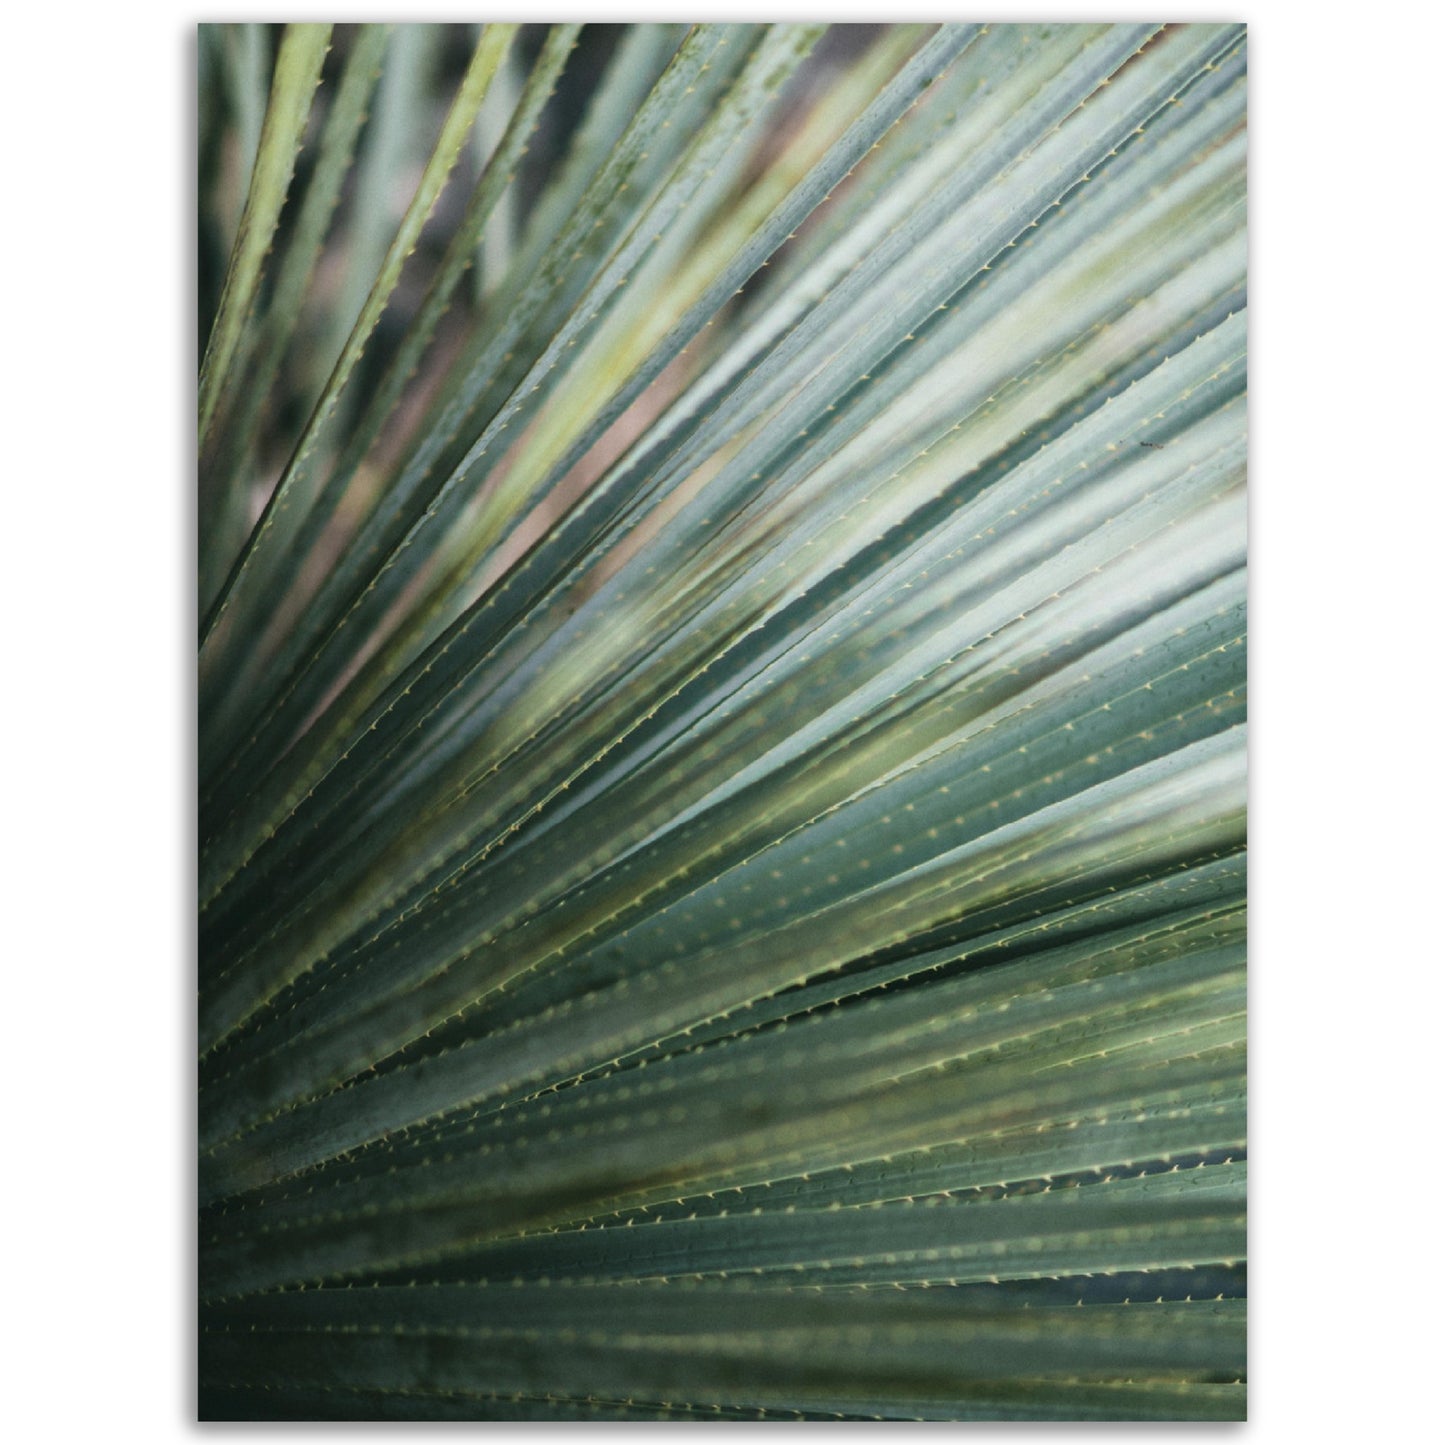 Palm Leaf Print